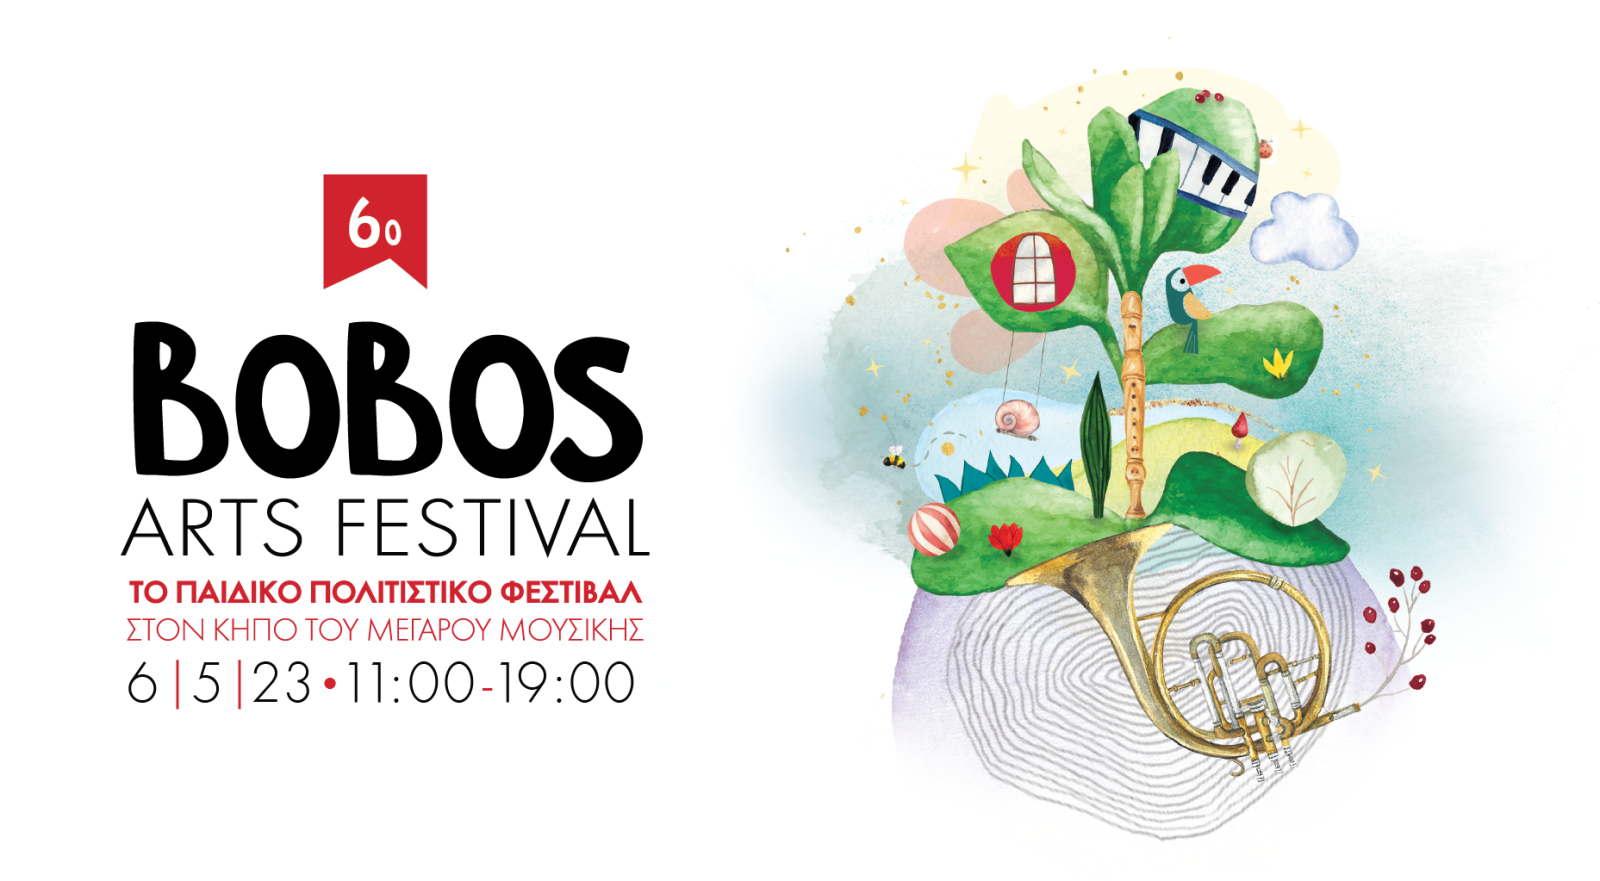 Το 6o Bobos Arts Festival έρχεται τον Μάιο στον κήπο του Μεγάρου Μουσικής